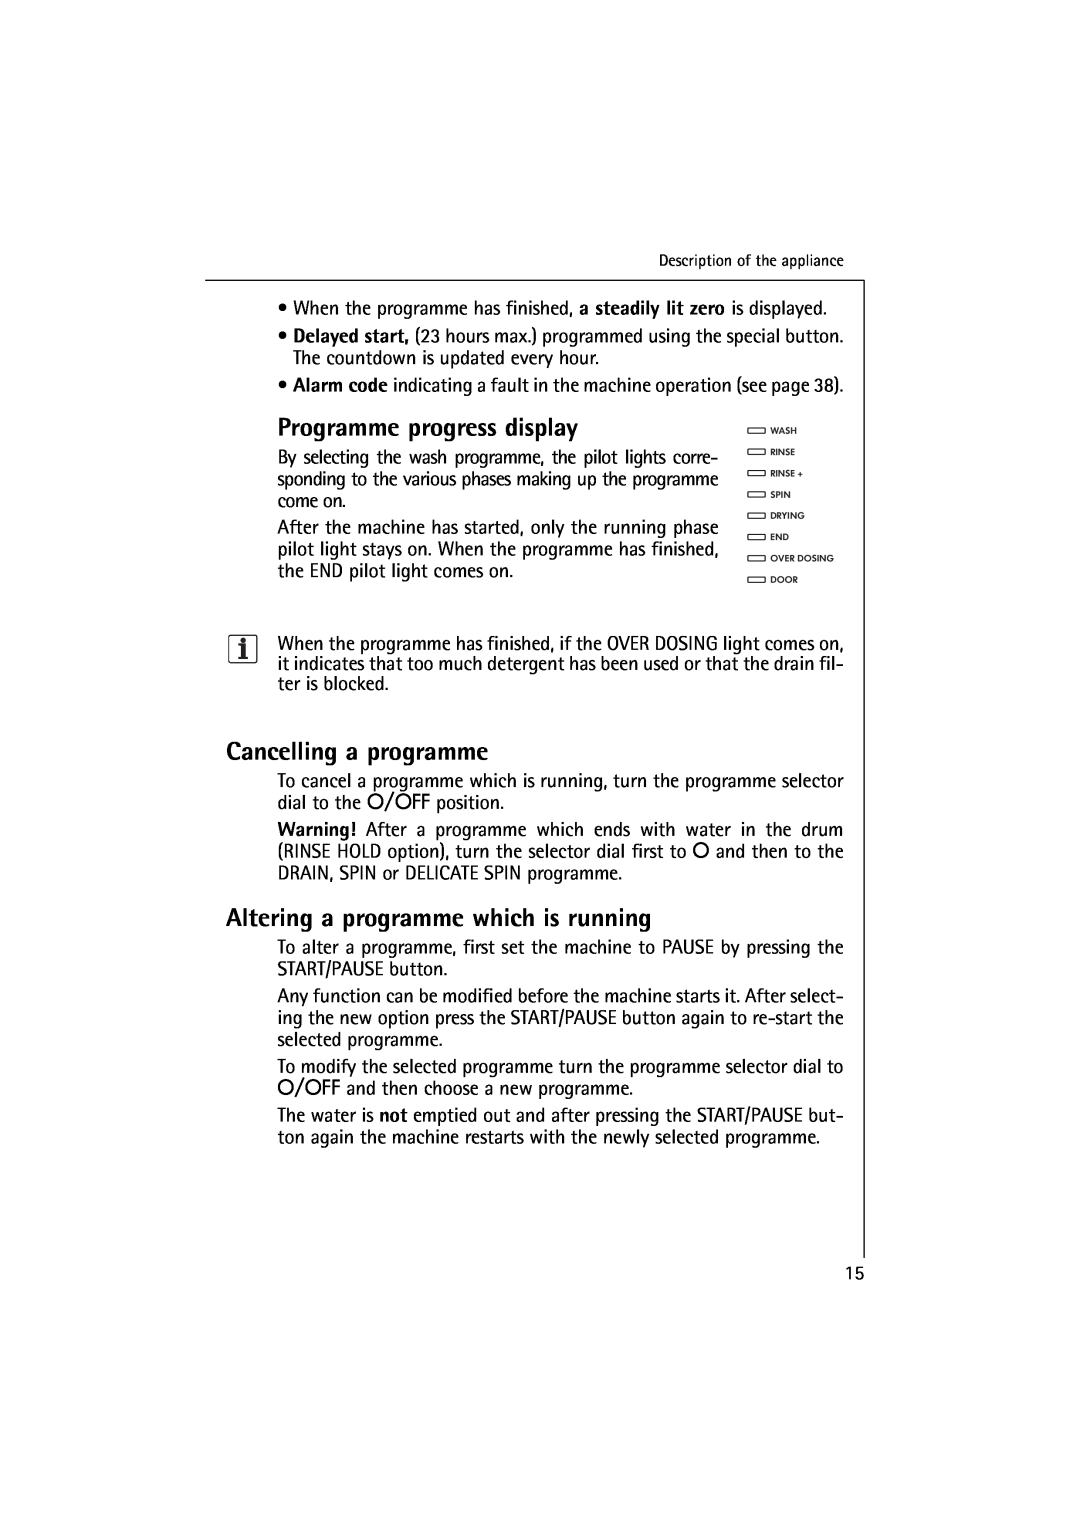 Electrolux 16830 manual Programme progress display, Cancelling a programme, Altering a programme which is running 